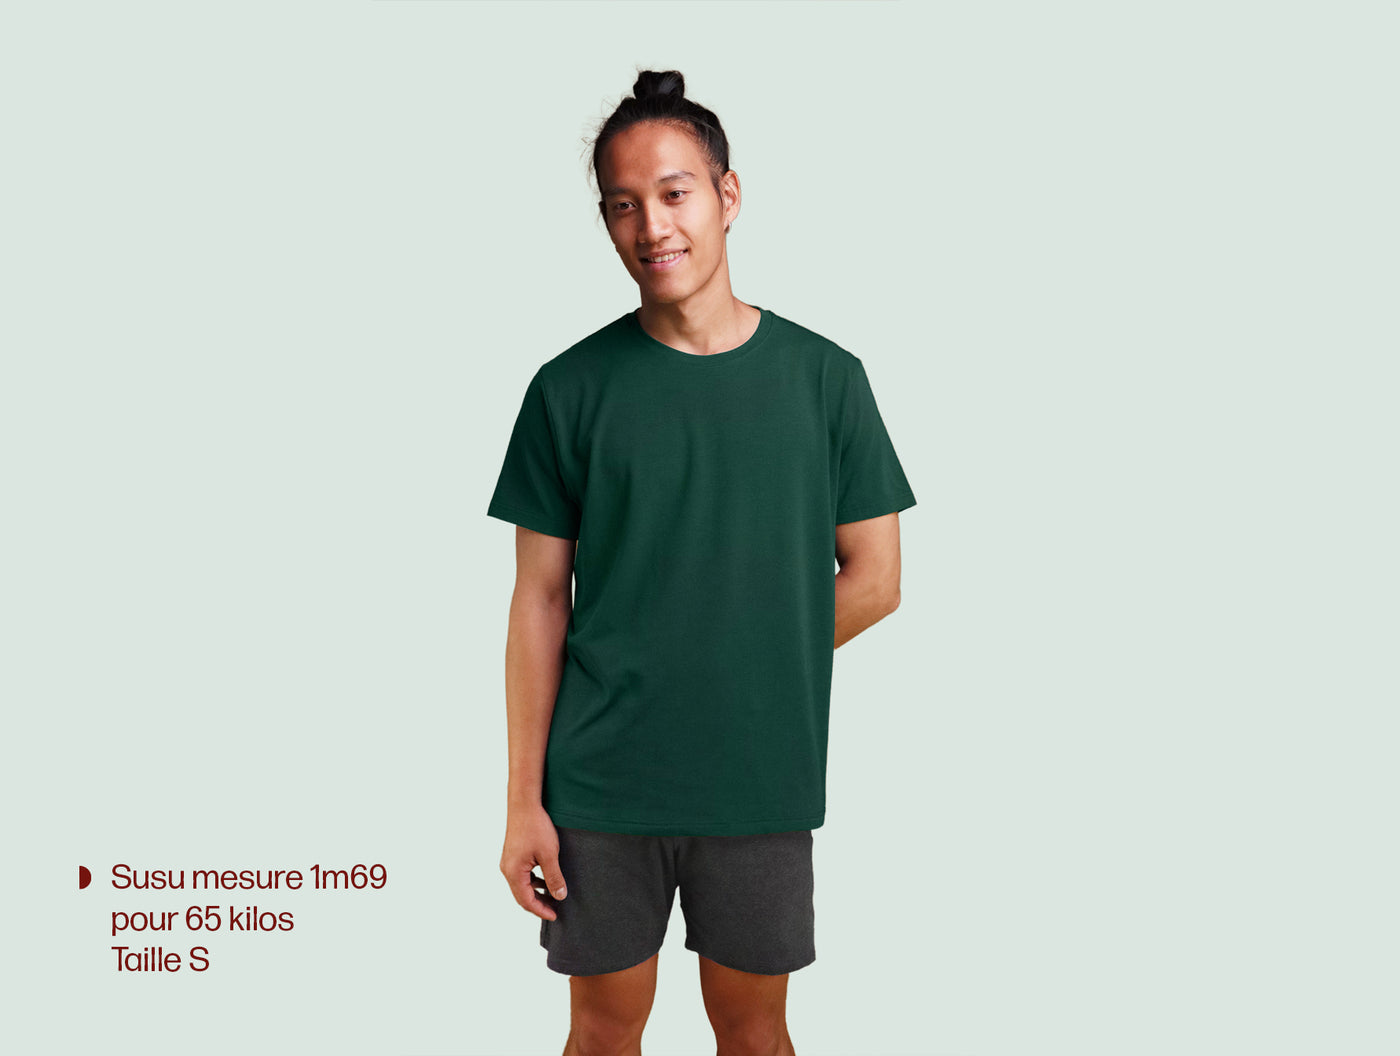 Pétrone T-shirt manches courtes coton pima micromodal vert bouteille homme#couleur_vert-bouteille